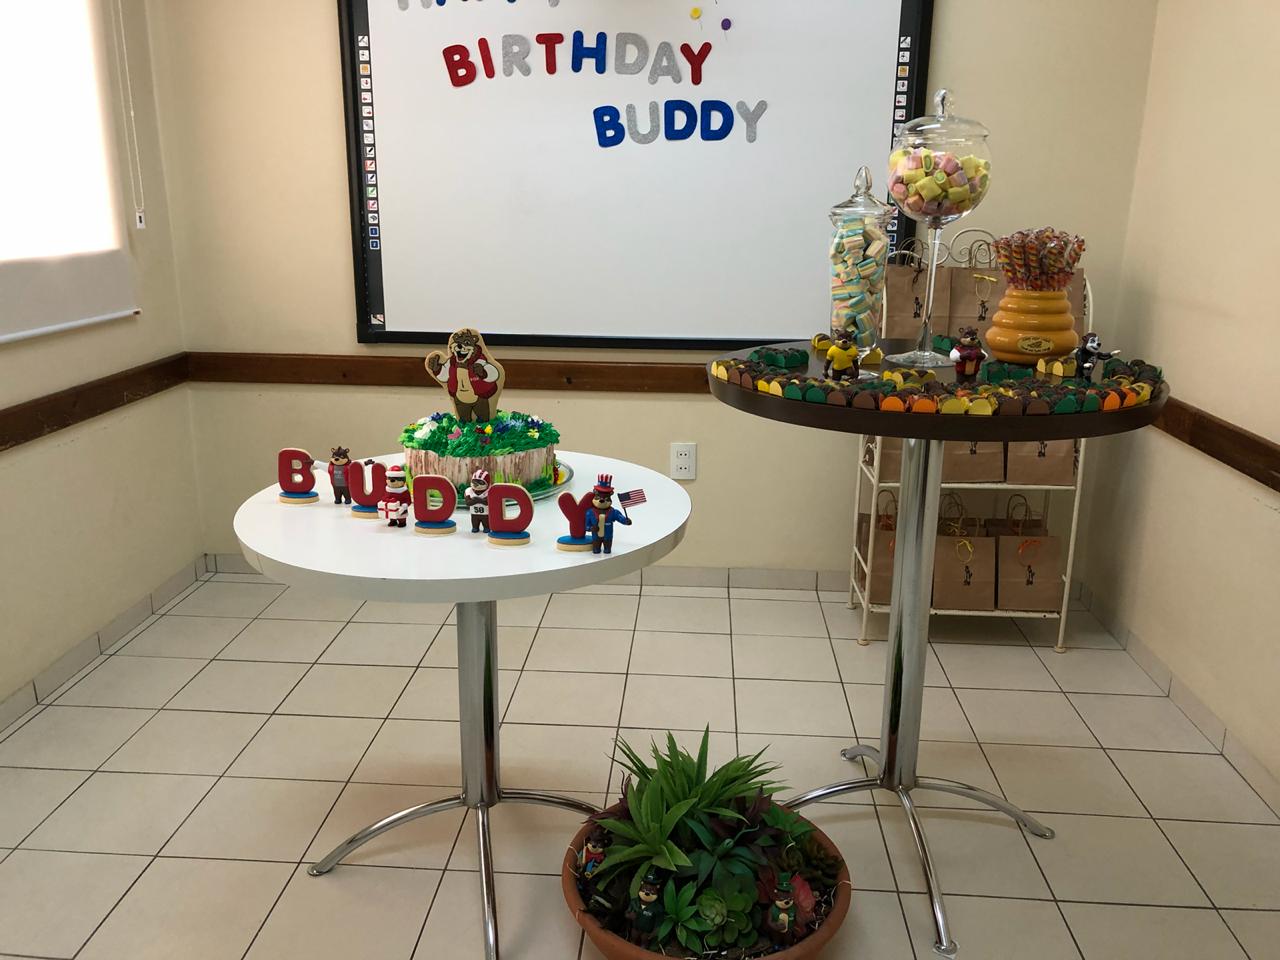 Fisk Araçatuba/ SP - Buddy's Birthday Party